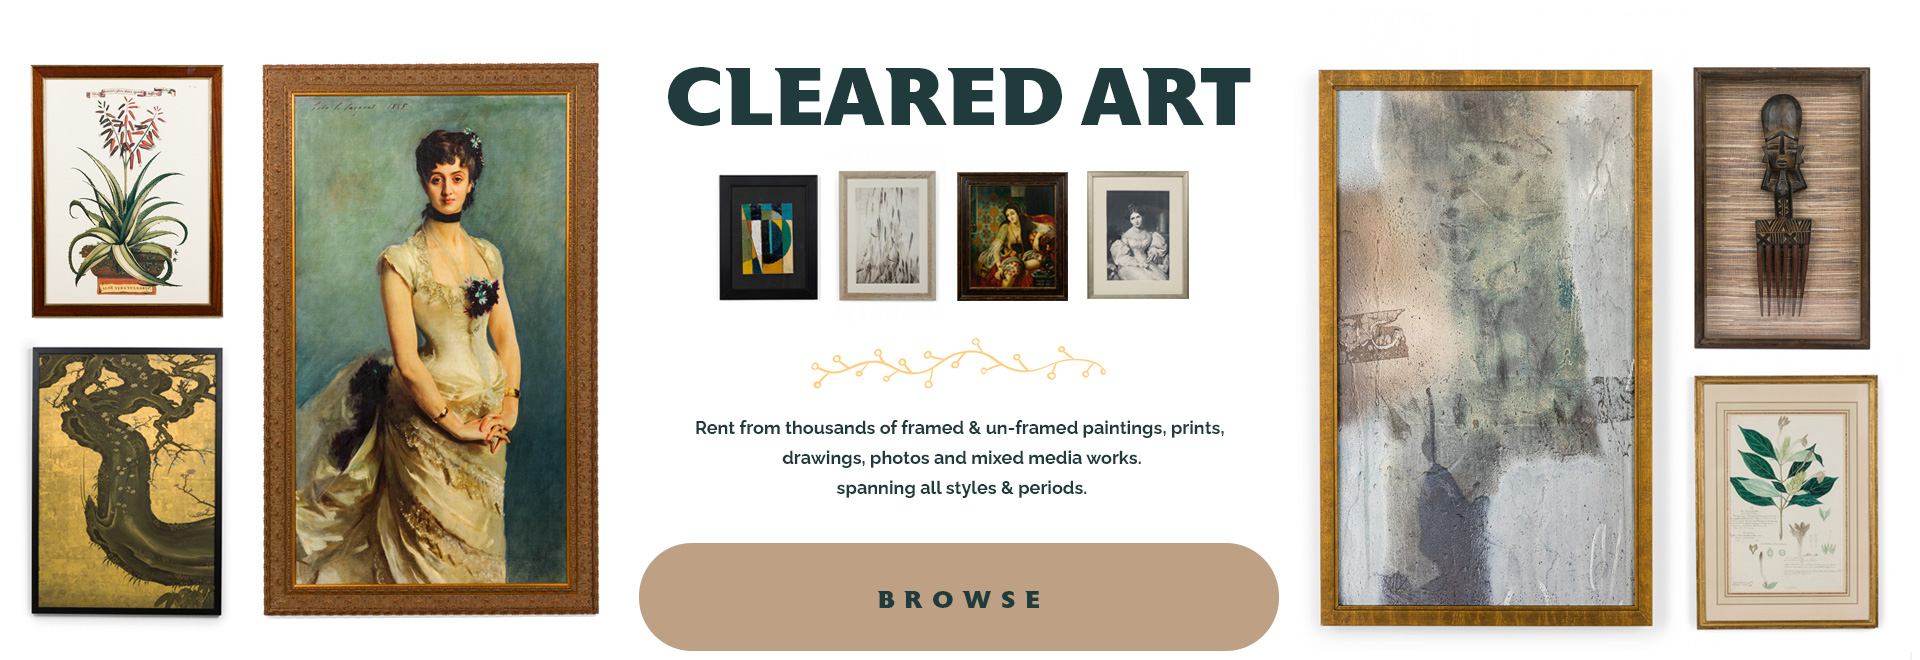 Cleared Art